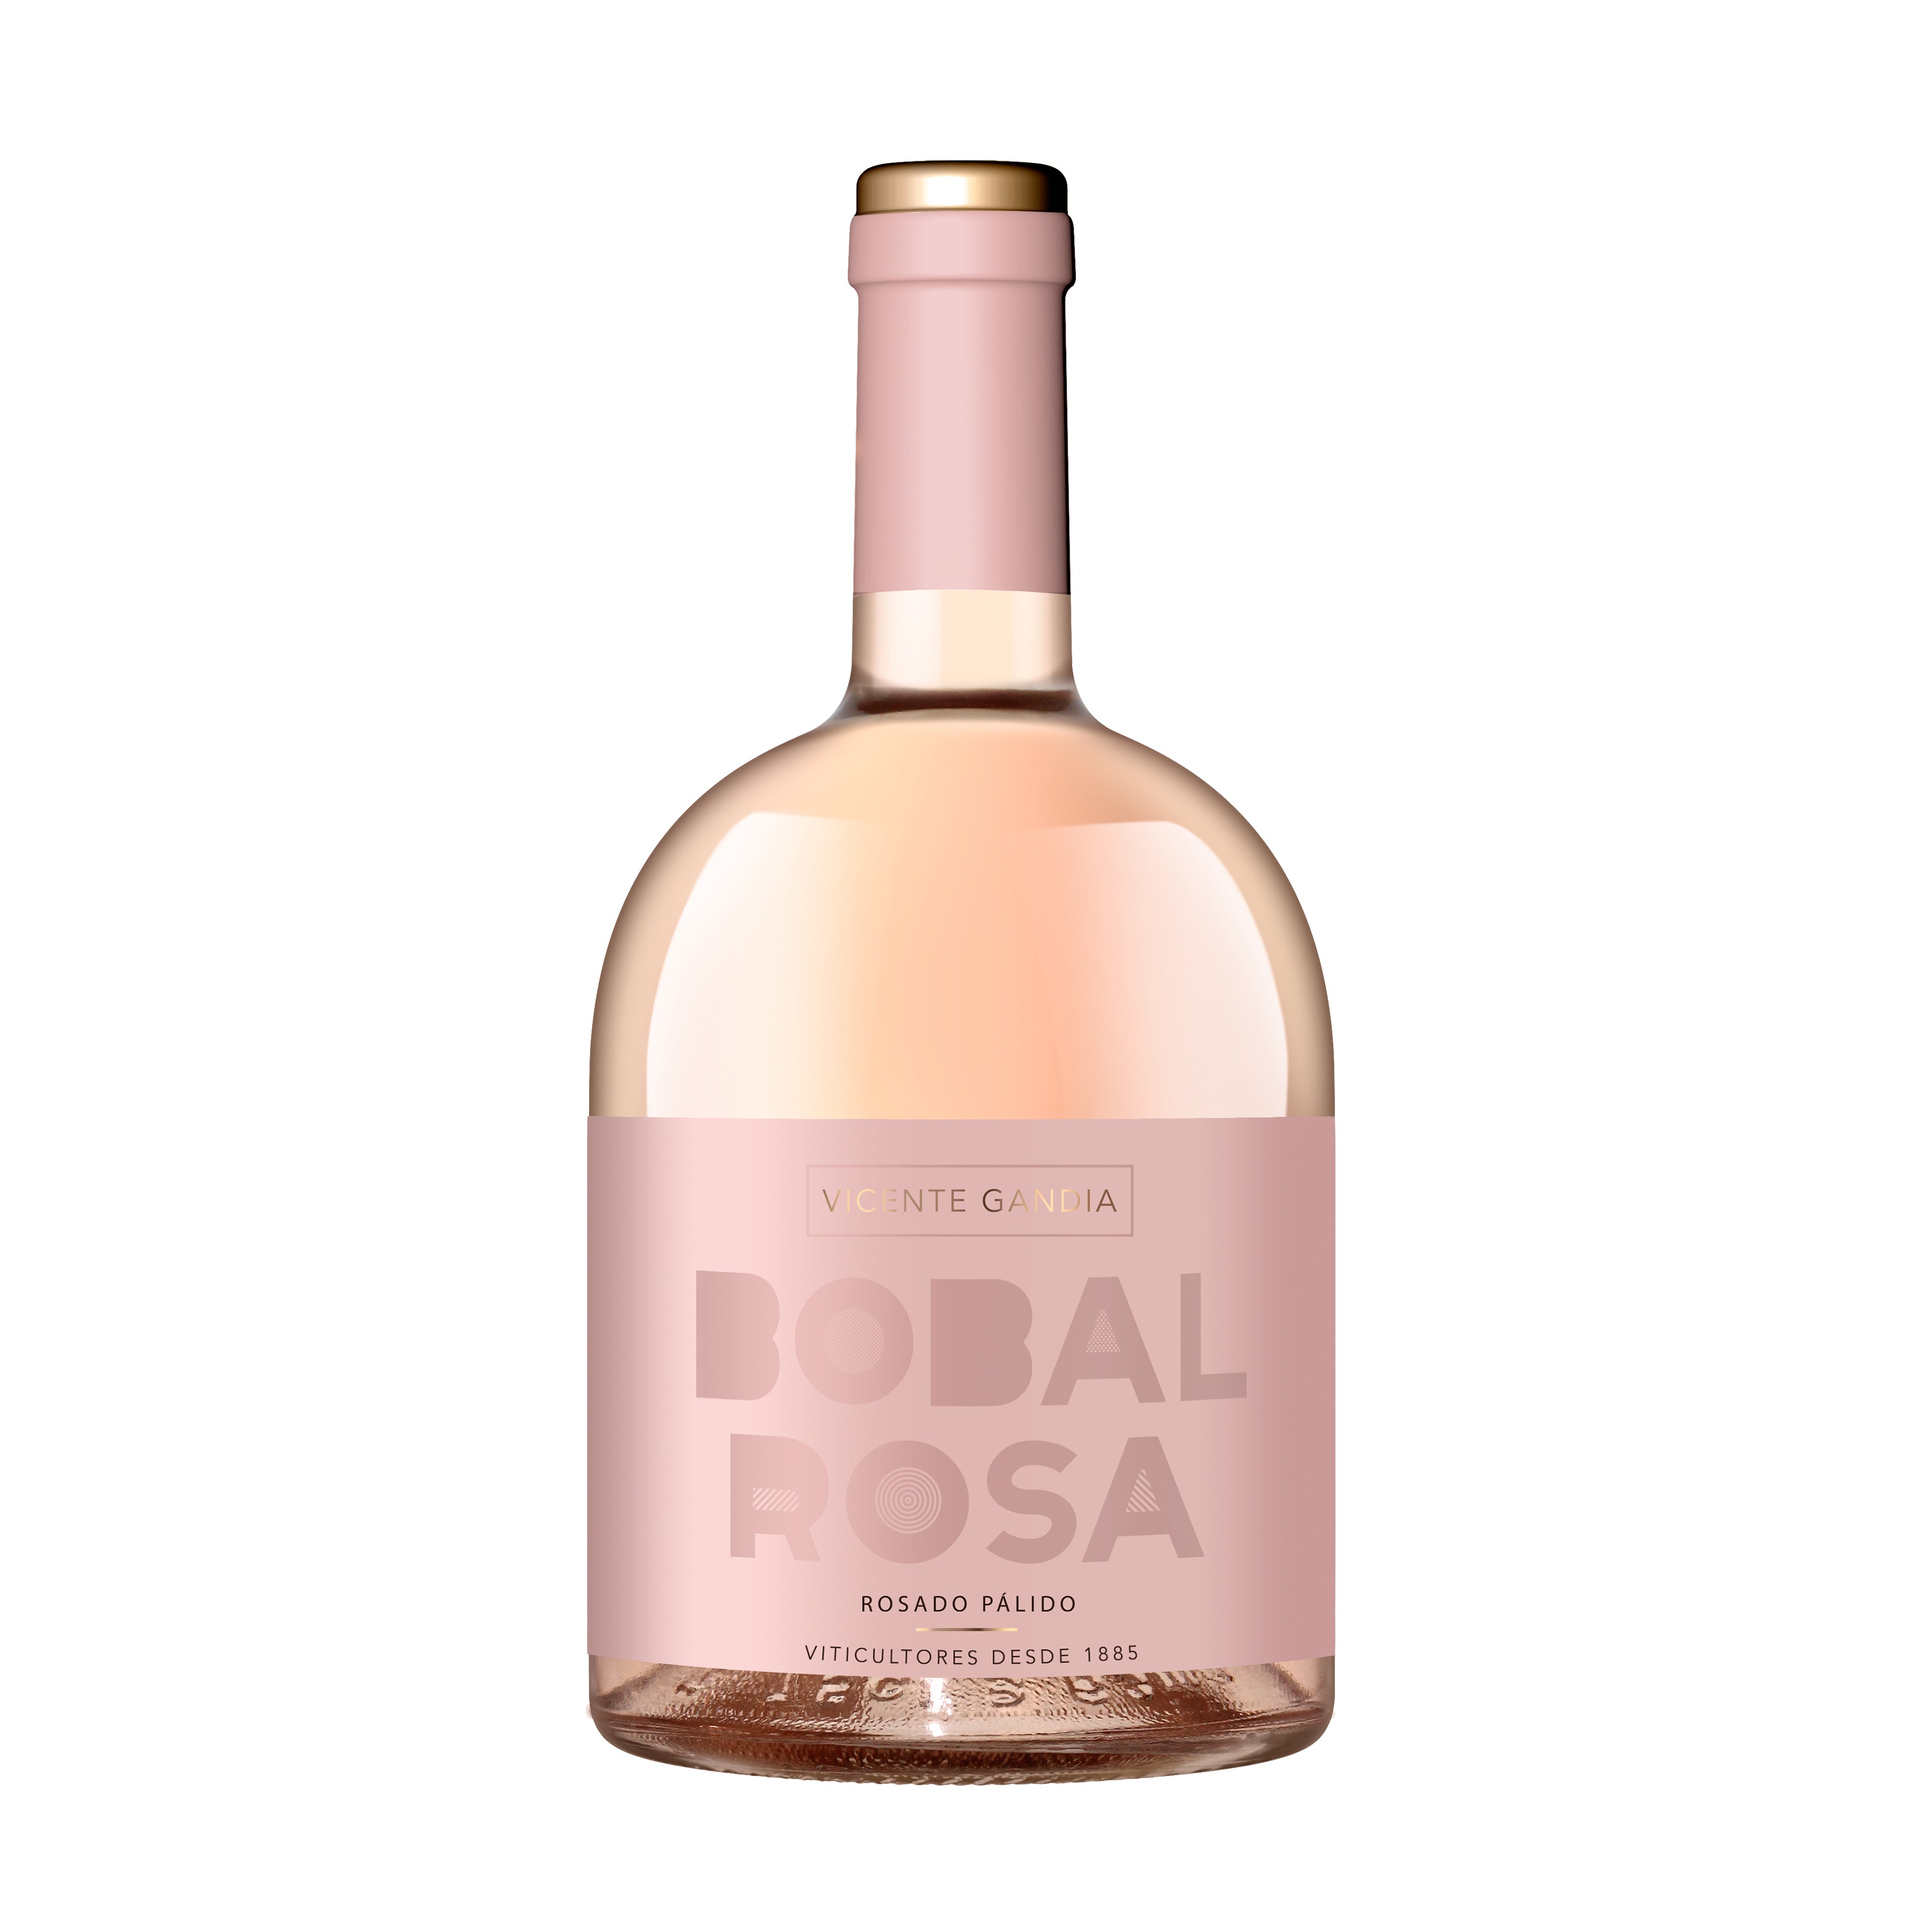 Bobal Rosa